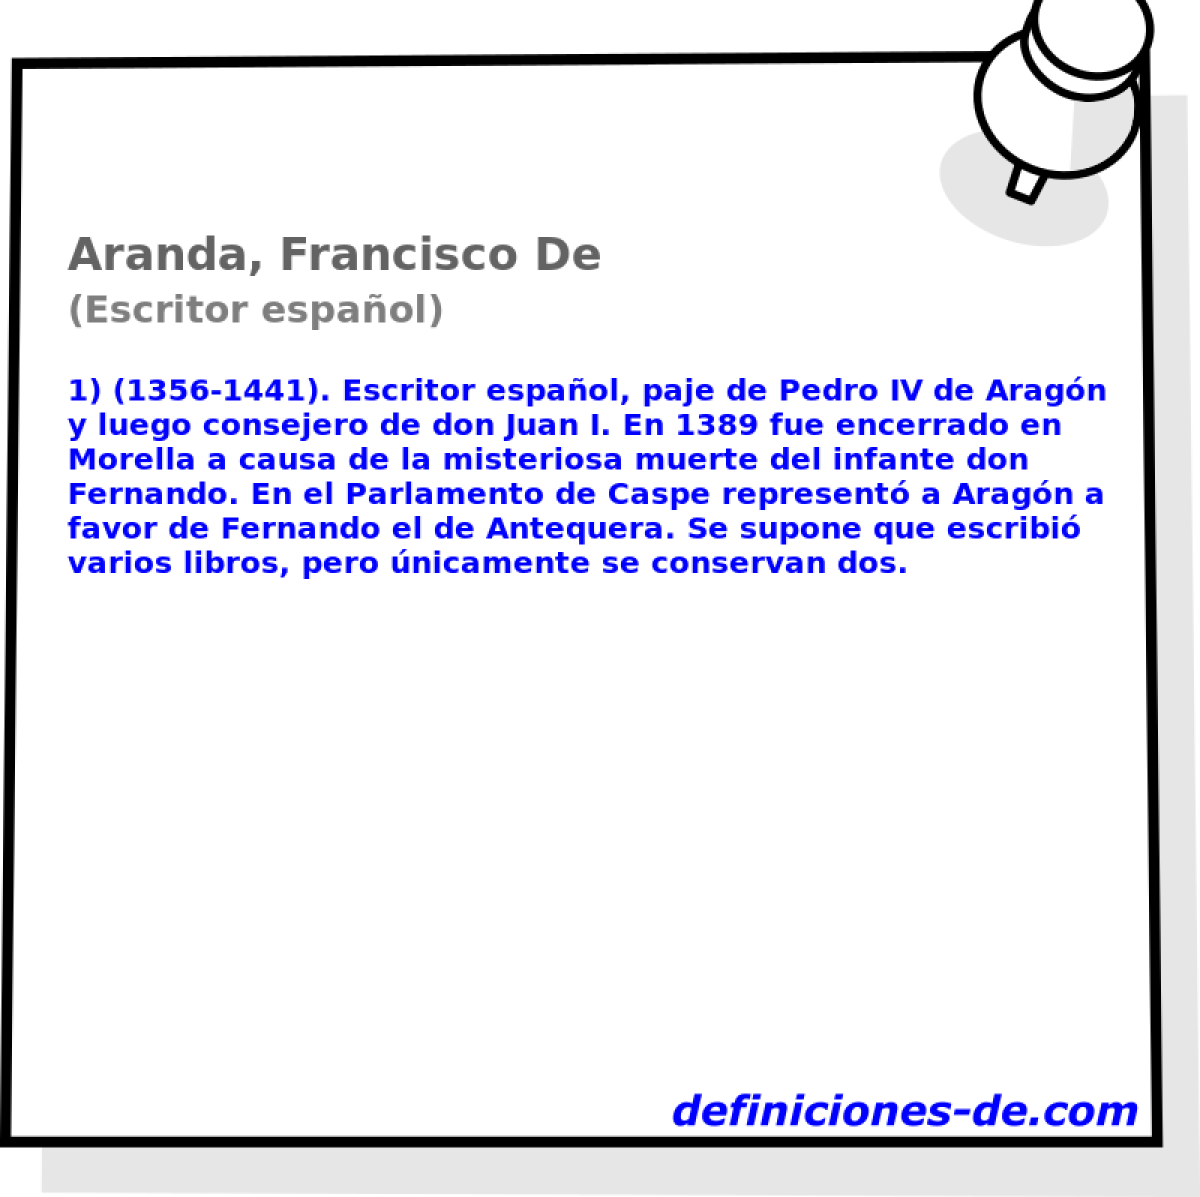 Aranda, Francisco De (Escritor espaol)